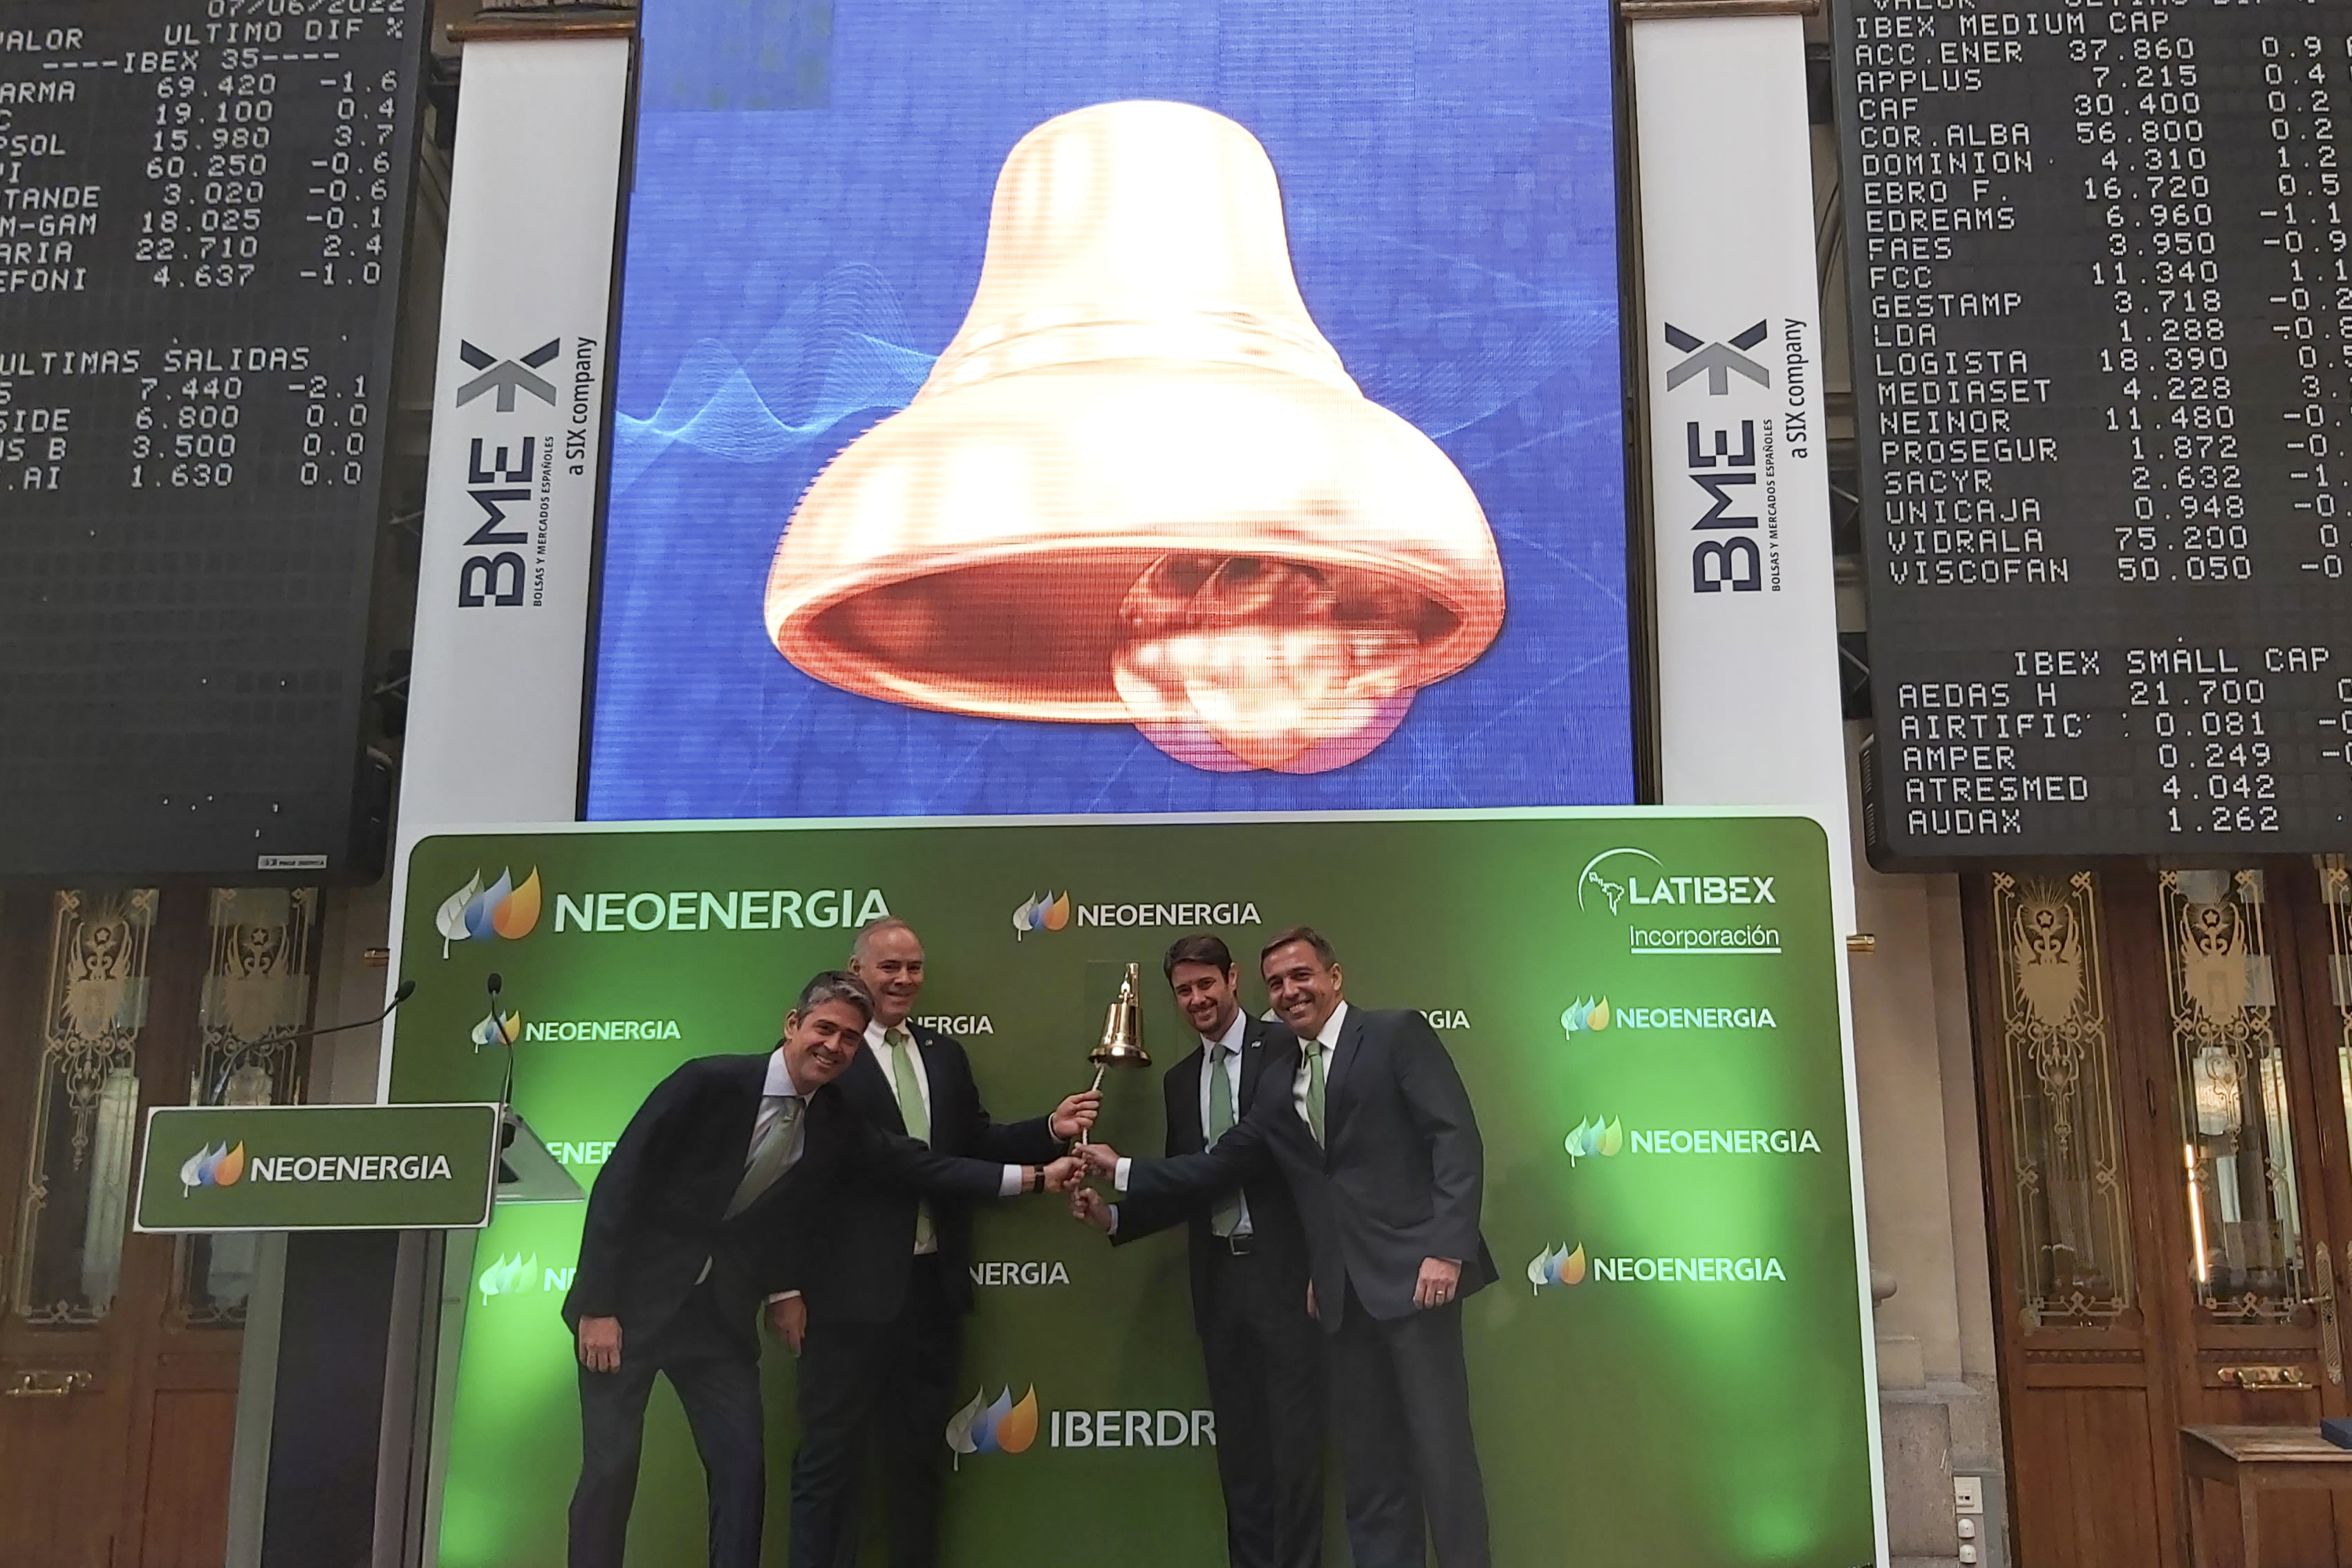 Estreno al alza para la filial de Iberdrola en Brasil: Neoenergia sube un 2,3% en su debut en el Latibex